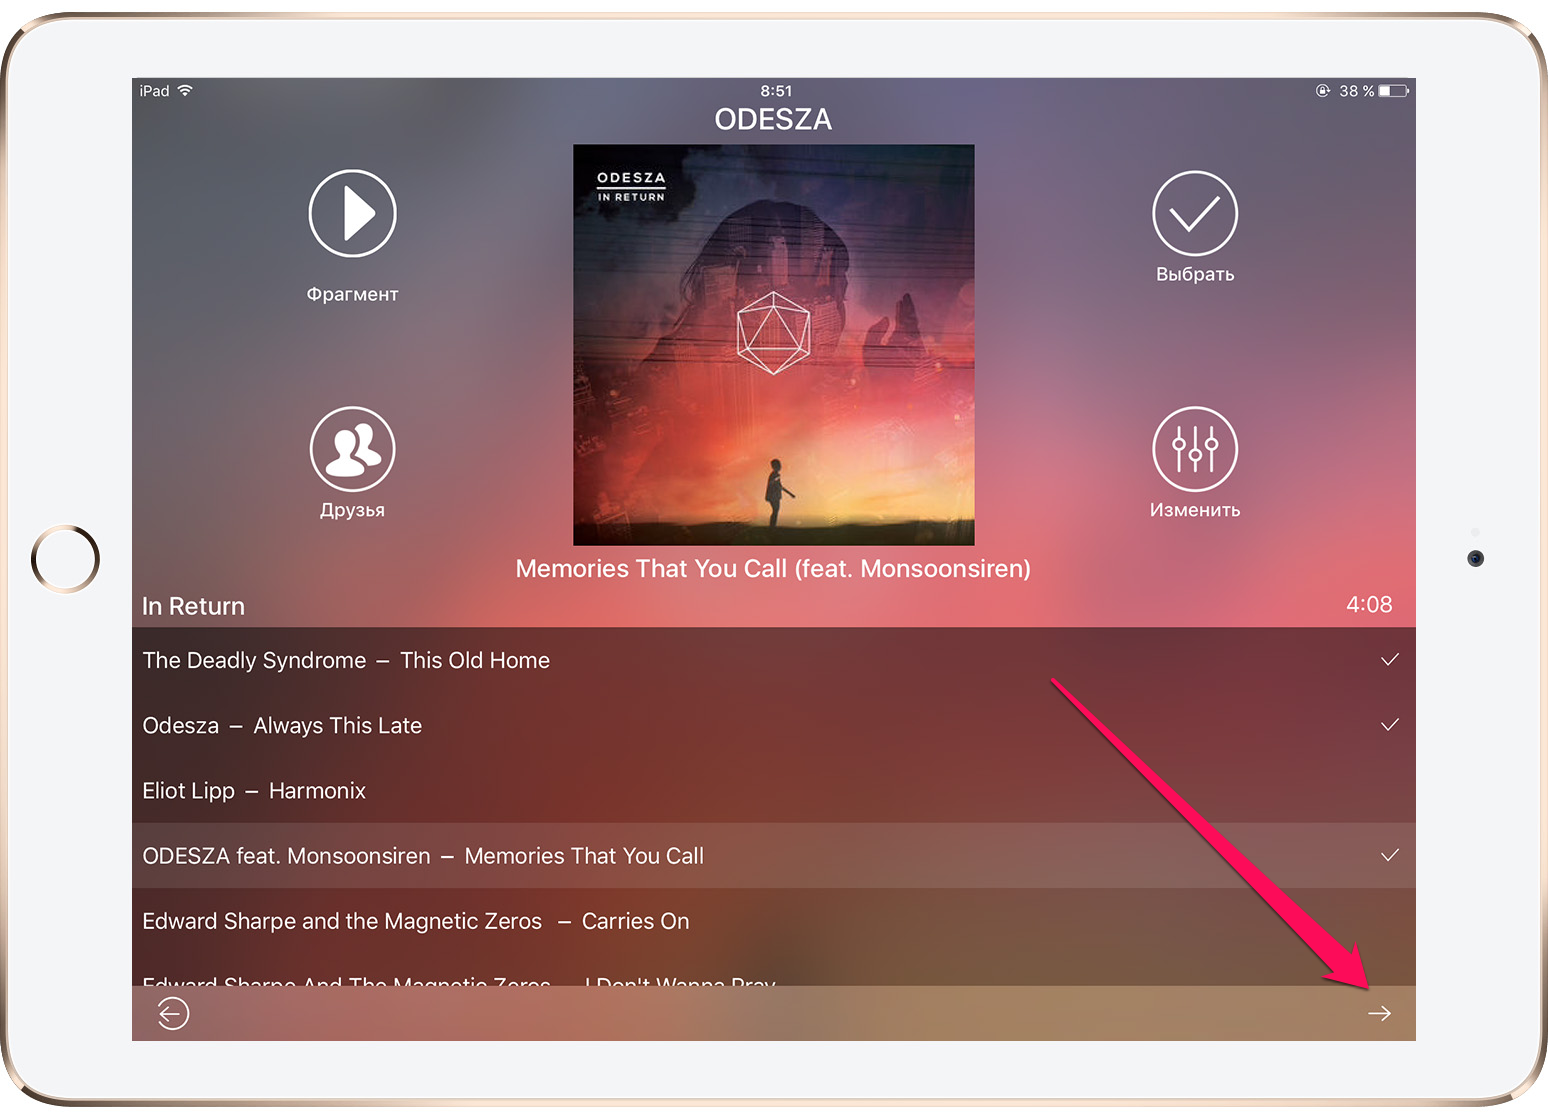 Как перенести музыку из «ВКонтакте» в Apple Music